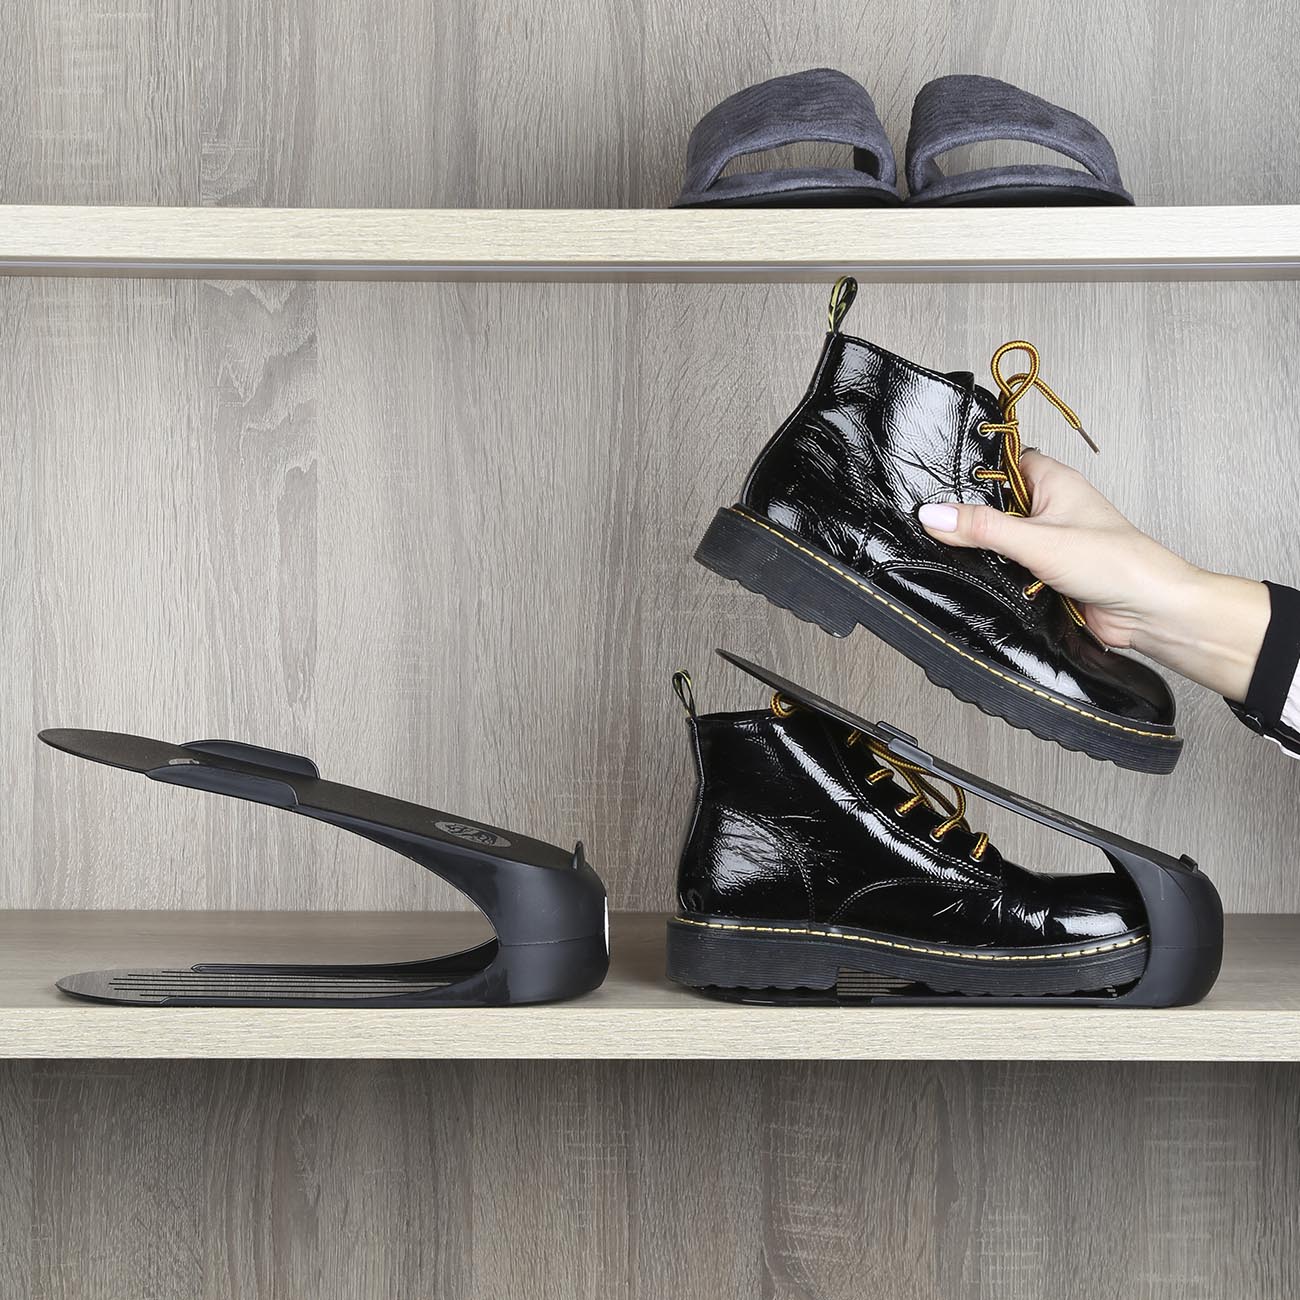 Органайзер-подставка для мужской обуви, 29 см, пластик, черный, Compact изображение № 3